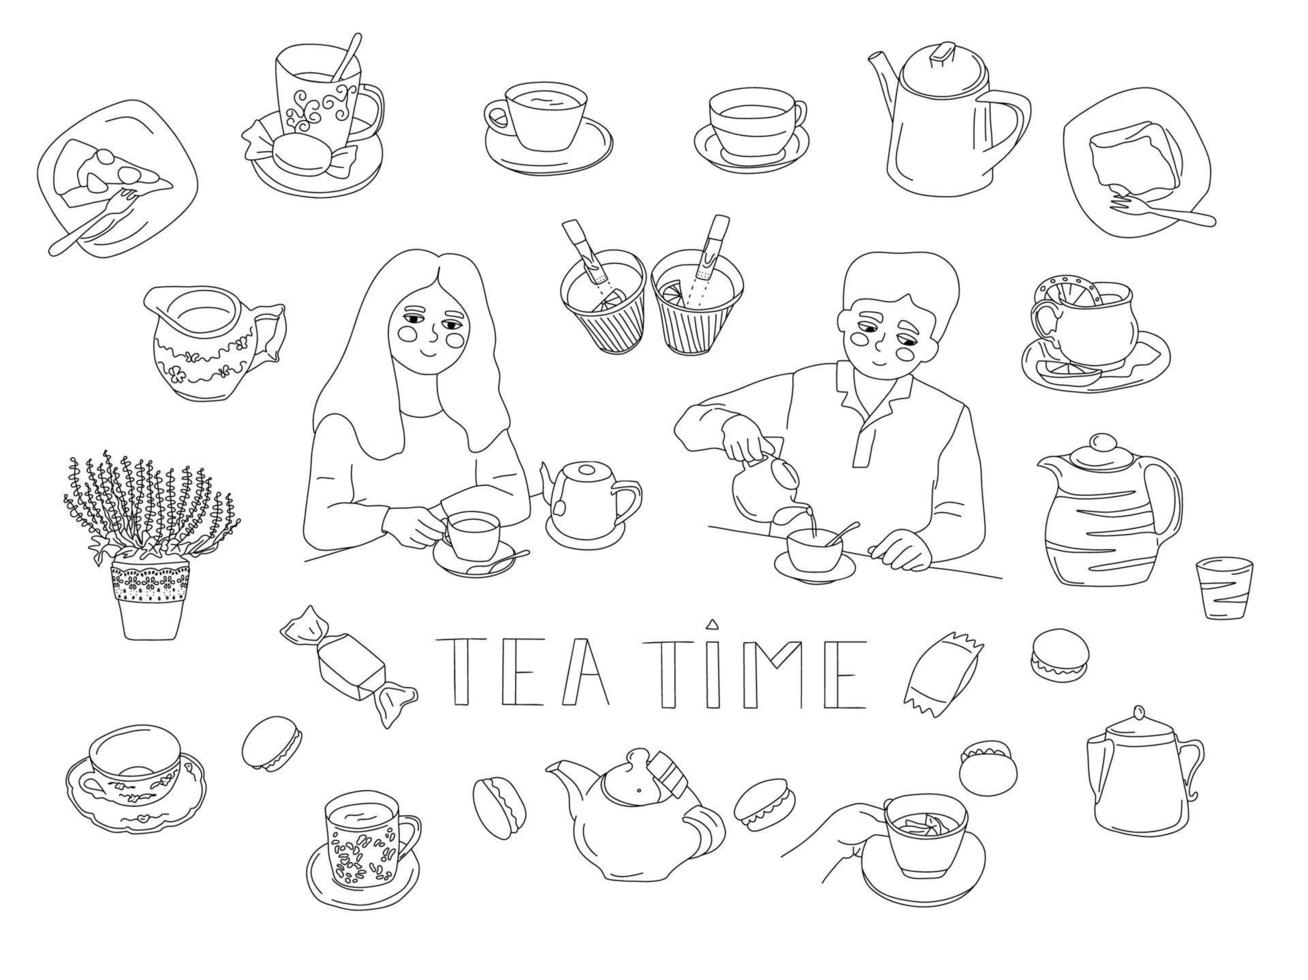 groot tekening reeks met thee tijd artikelen. Mens vrouw met kop van thee, theepotten, taarten, melk kruik, ketel, snoep, thee Tassen, thee naar Gaan, cafe interieur. vector illustratie.